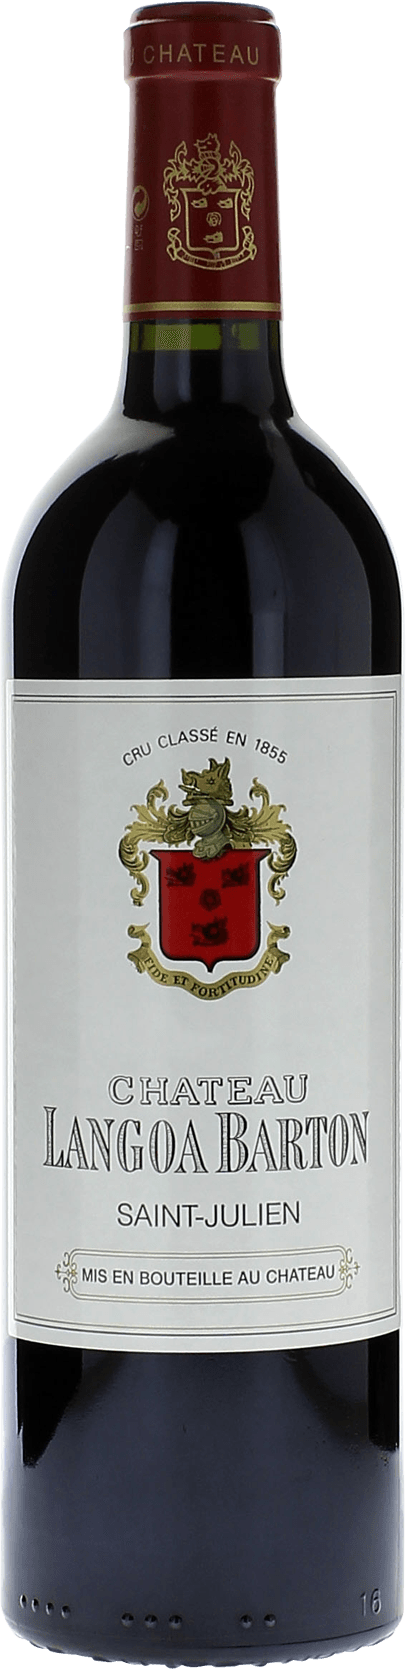 Langoa barton 1996 3me Grand cru class Saint-Julien, Bordeaux rouge